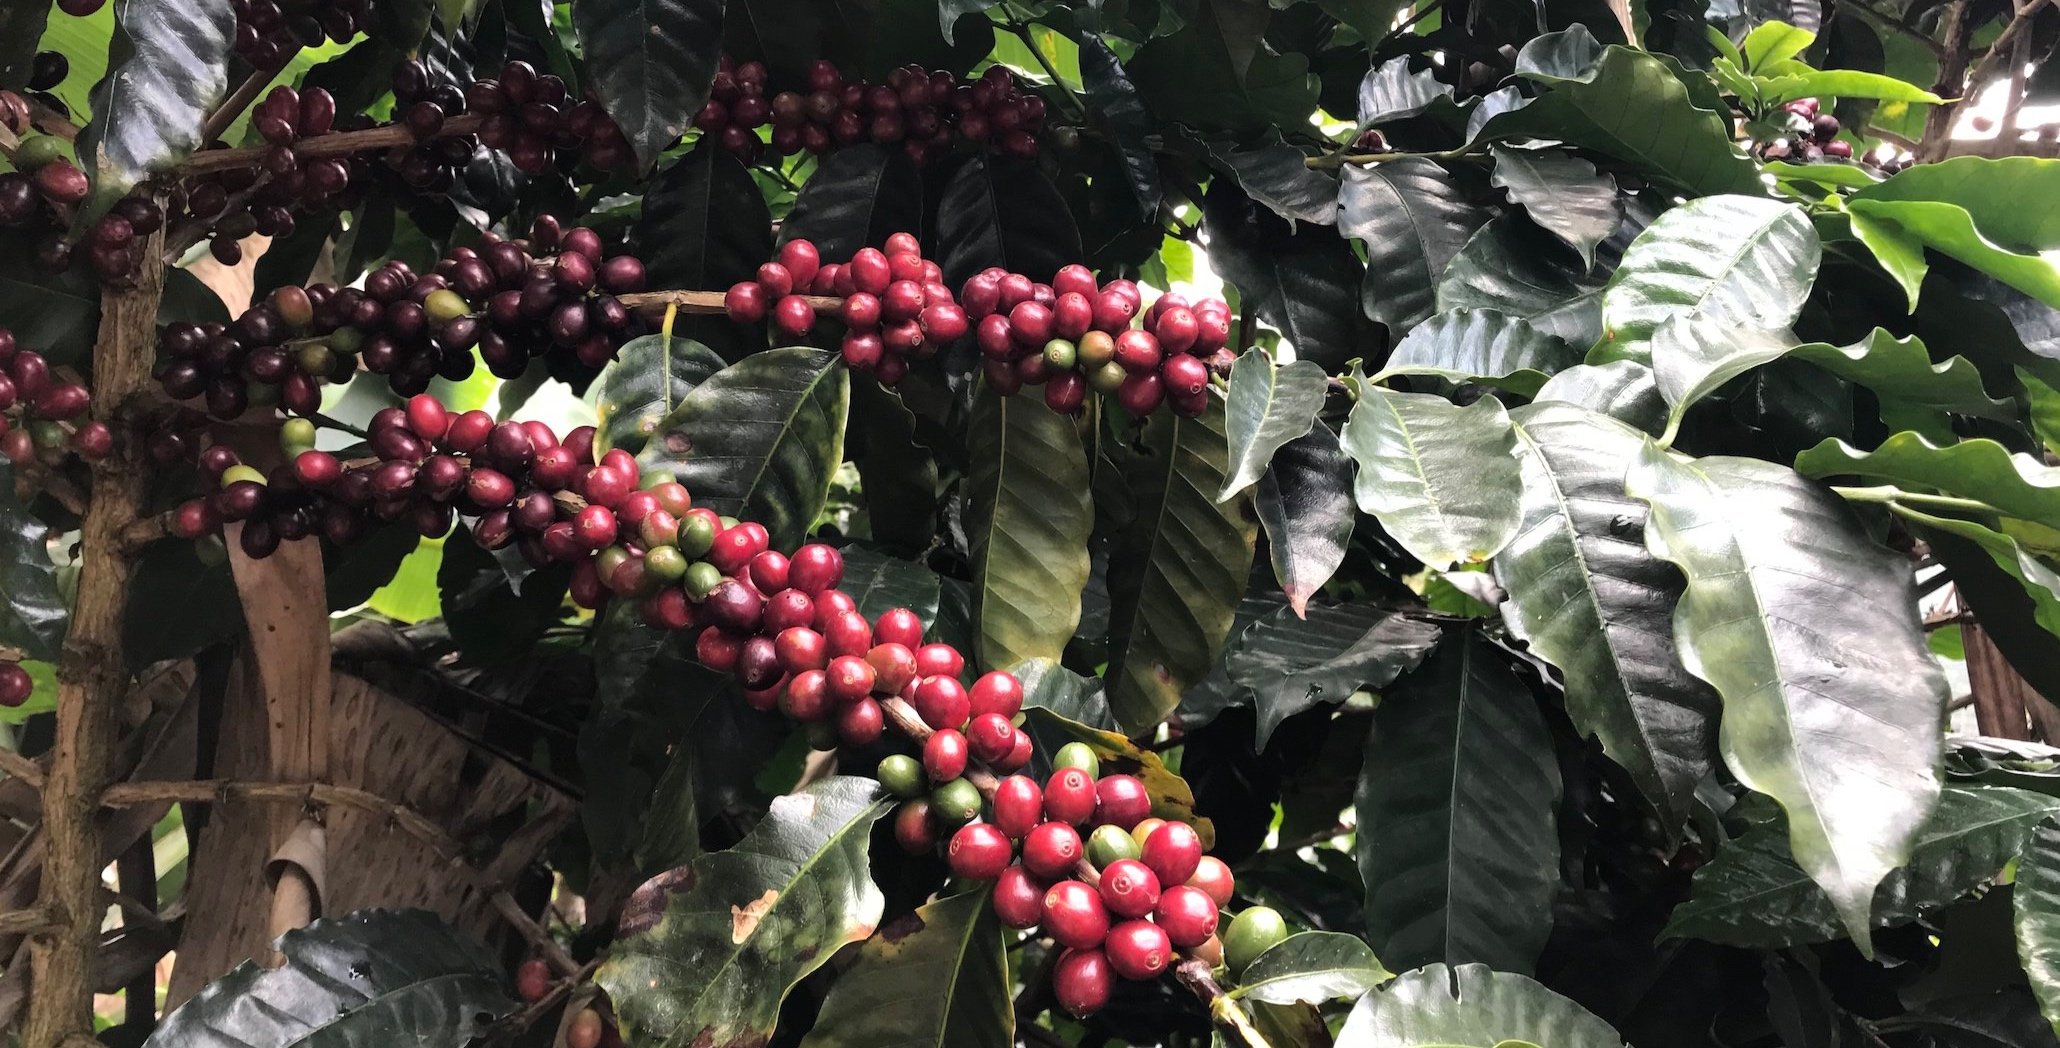 Cultivo de cafeeiro robusta/conillon se mostra viável na região